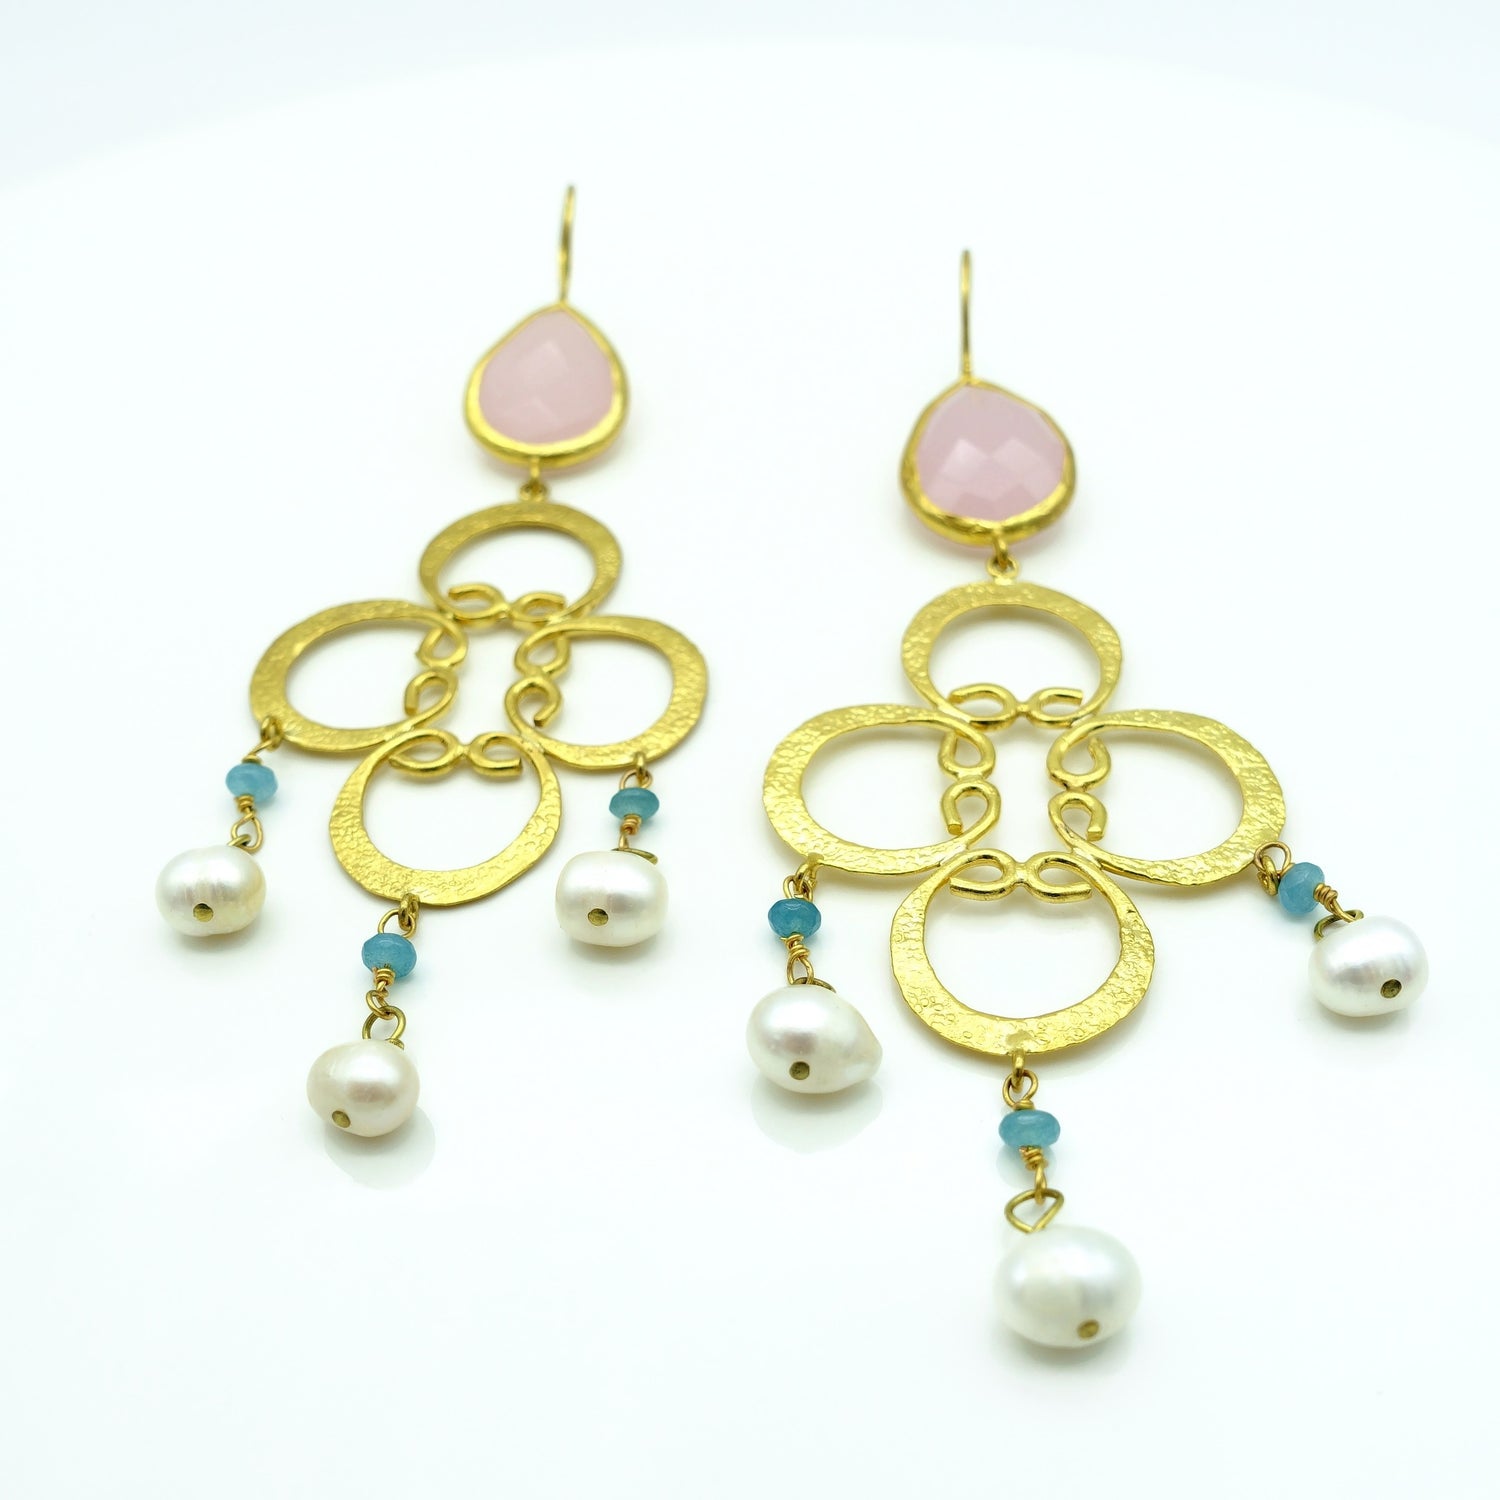 Aylas Pearl Rose quartz earrings 21ct Gold plated semi precious gemstone - Handmade